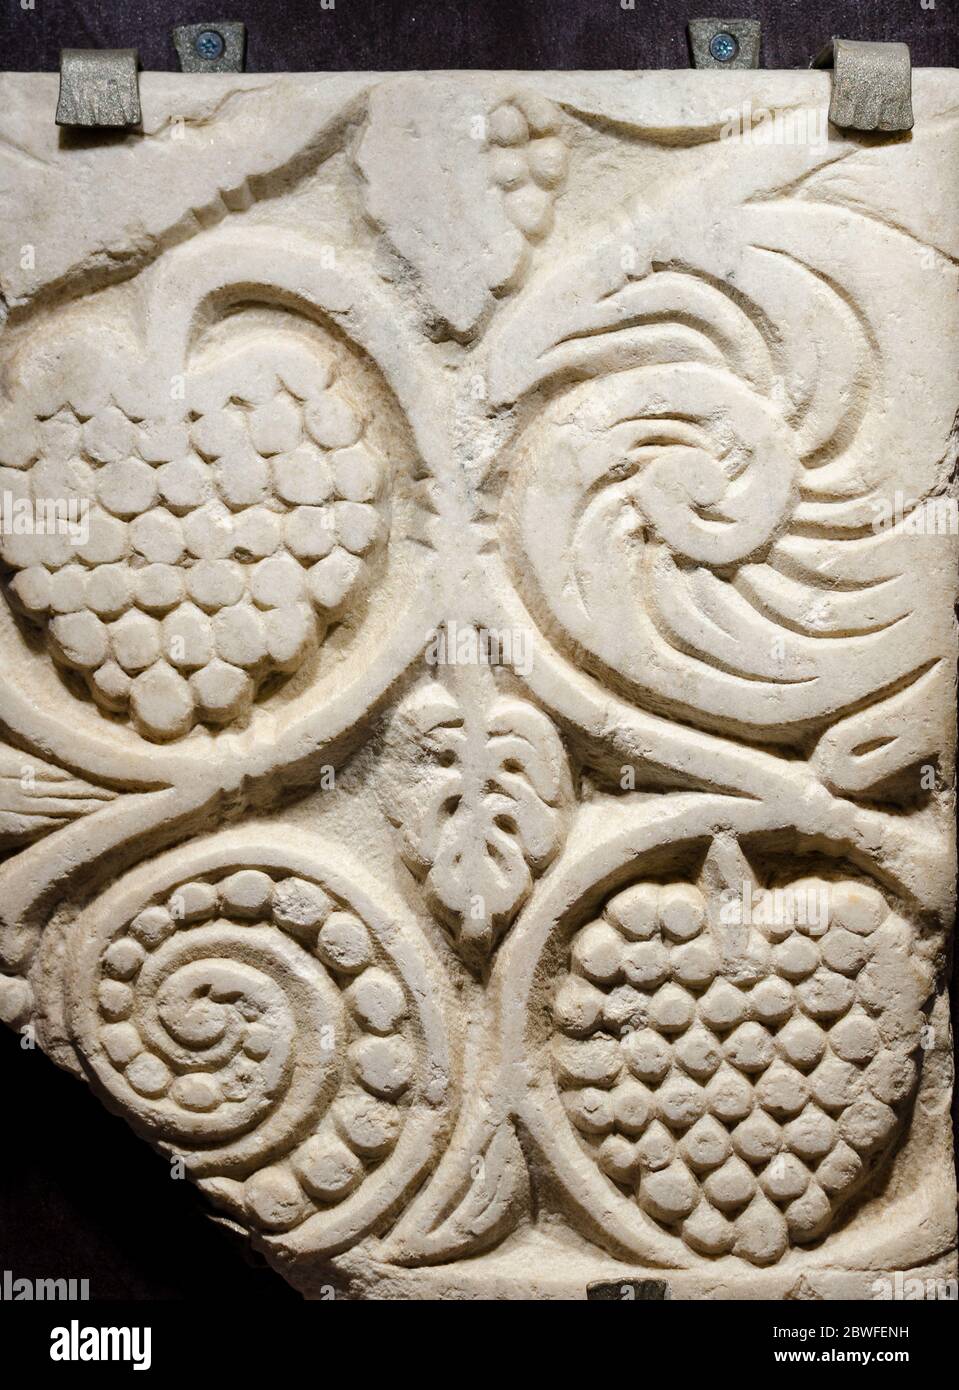 Traubenförmige romanische Dekorationen in der Steinmauer einer alten mittelalterlichen Kirche geschnitzt Stockfoto